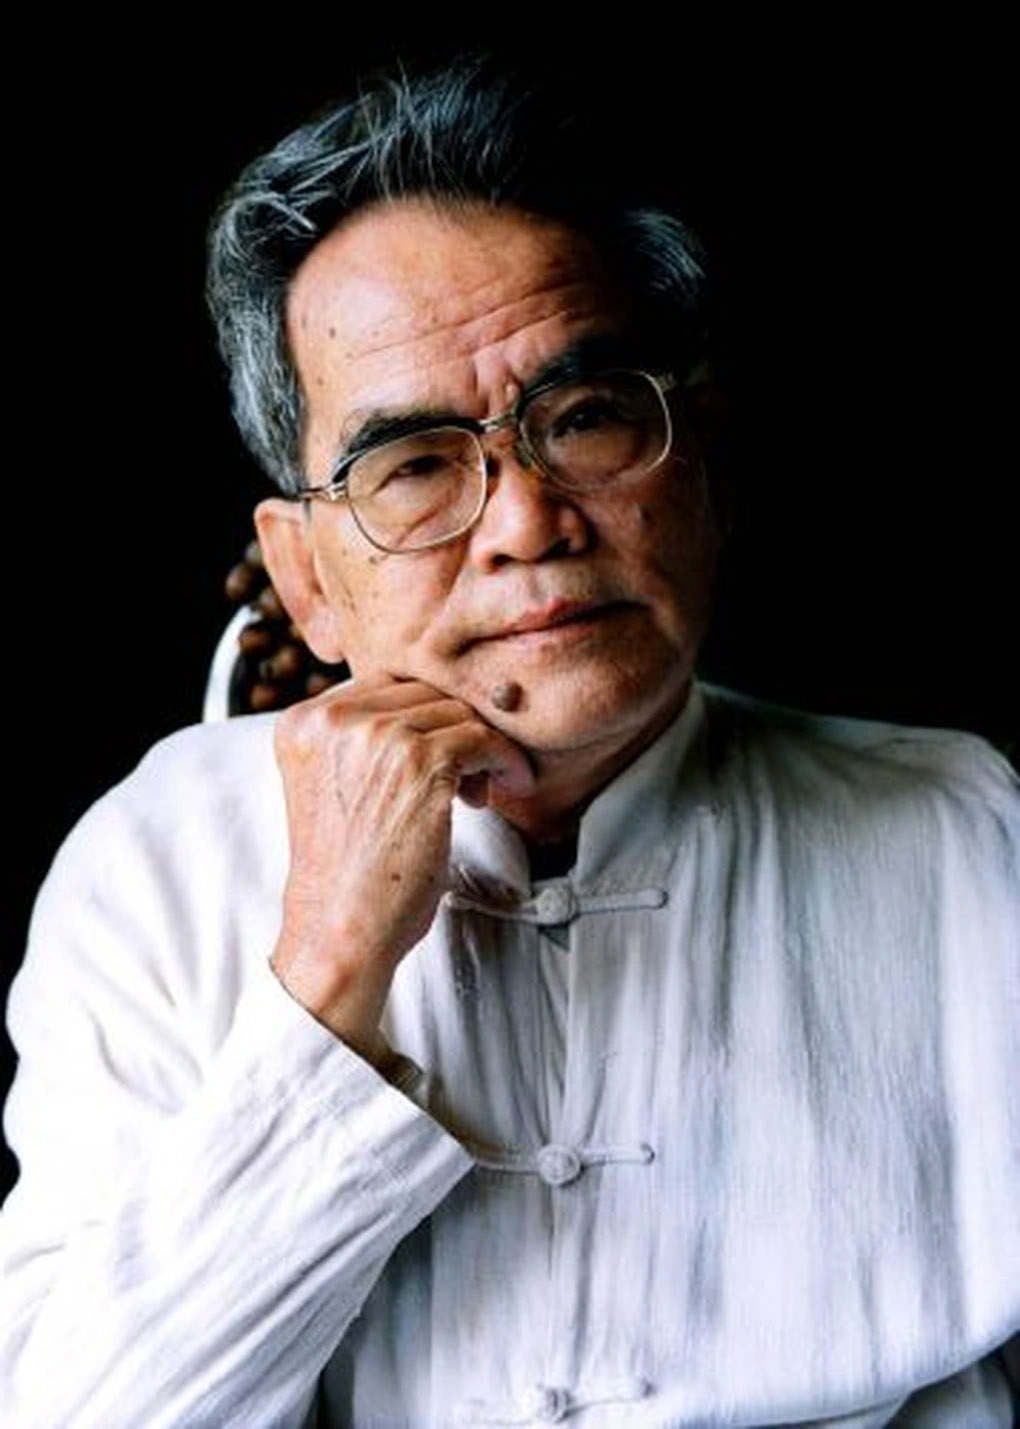 Nhà văn Hoàng Phủ Ngọc Tường qua đời ở tuổi 86 sau thời gian bệnh nặng-1